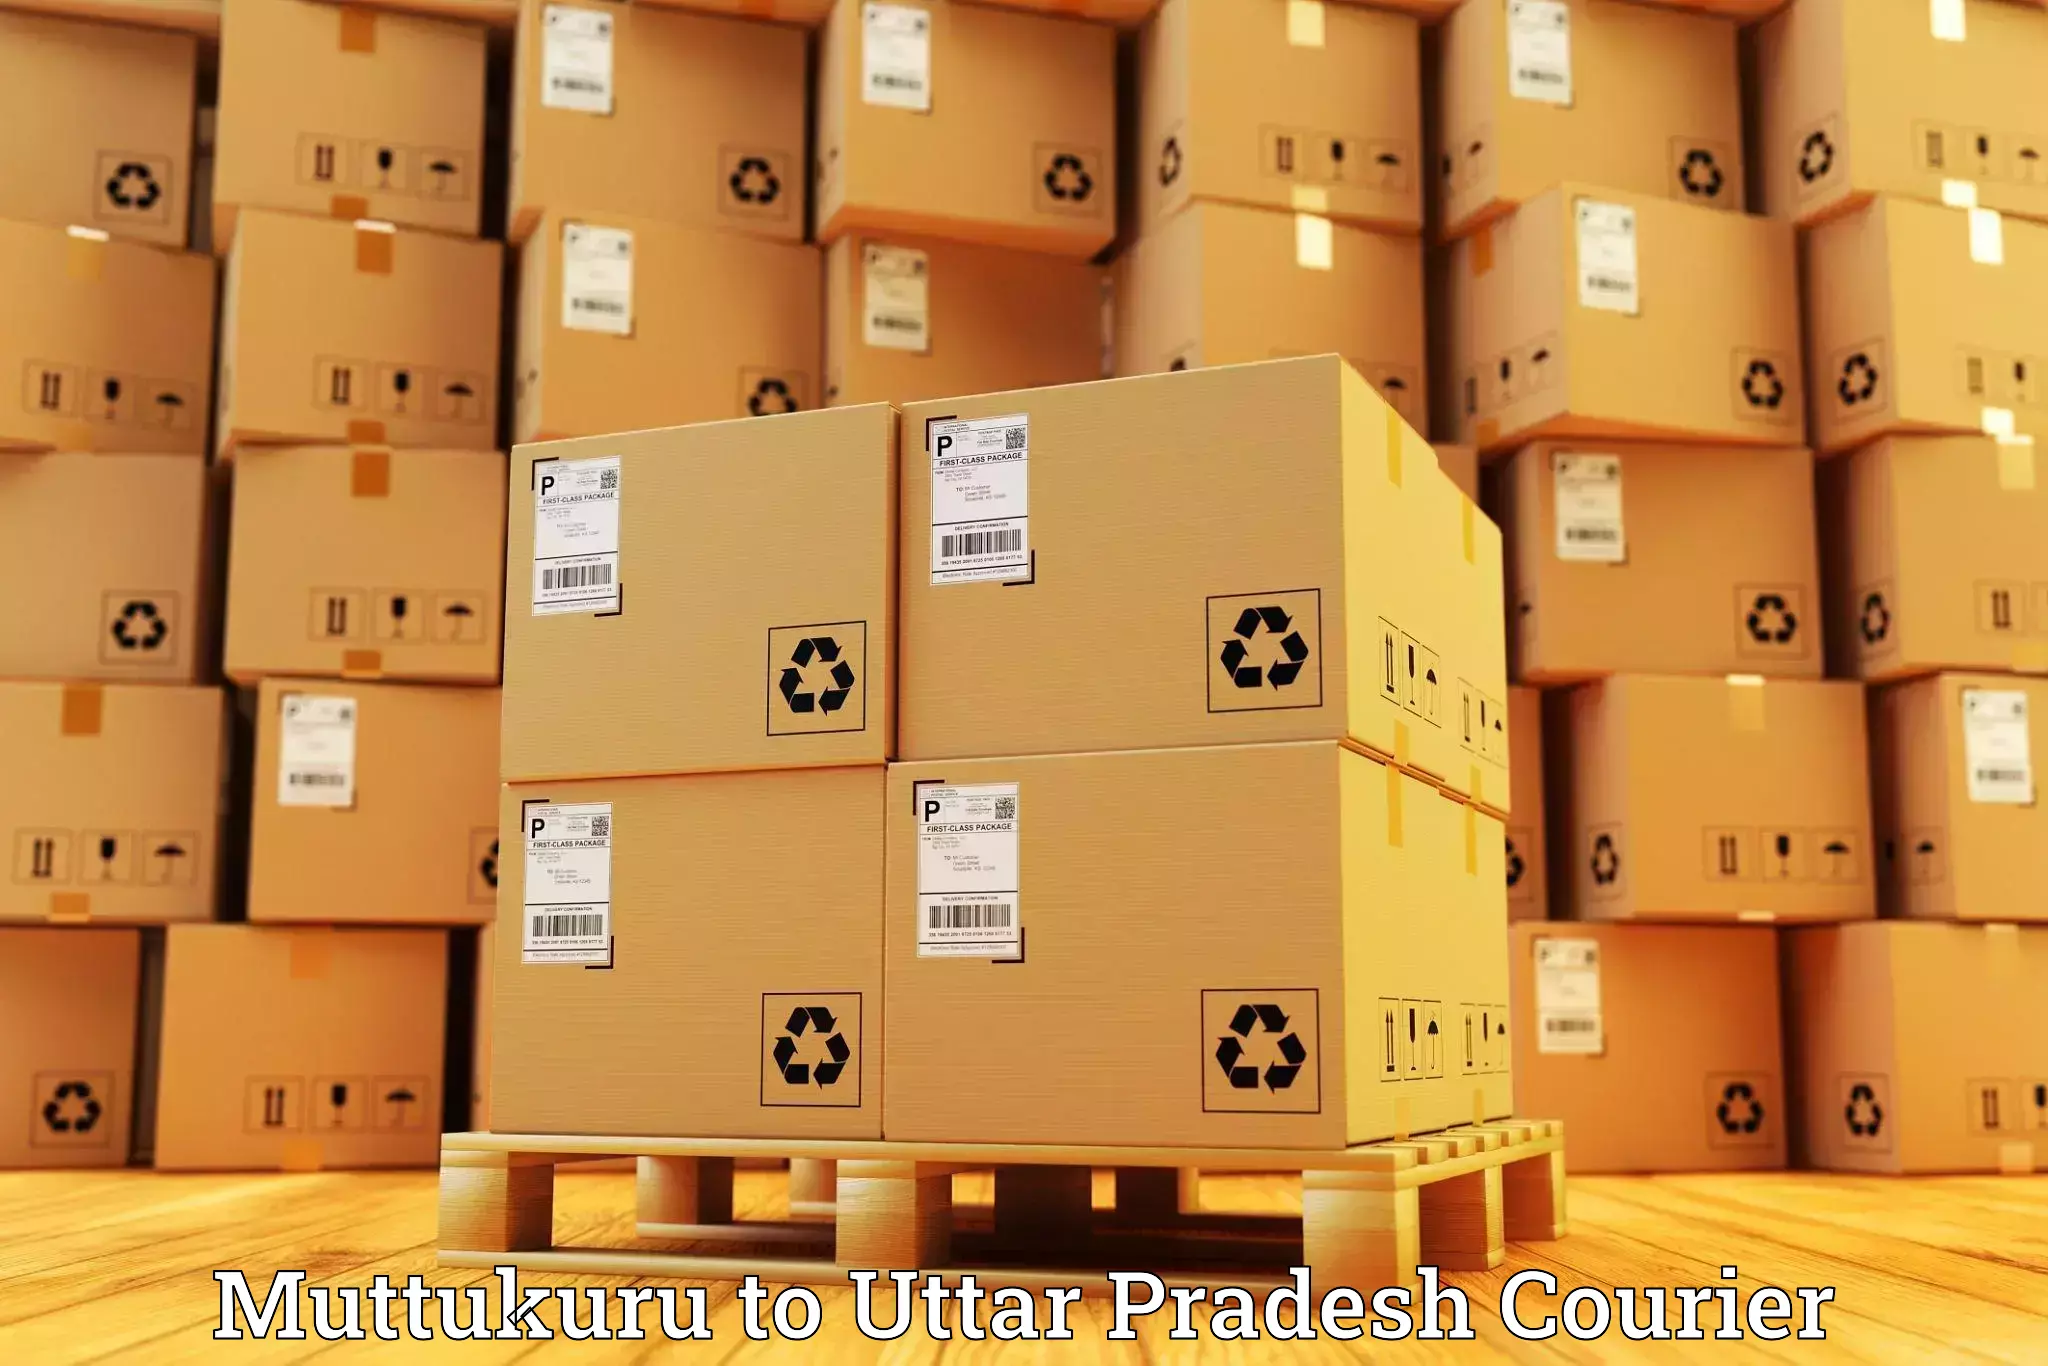 Next-generation courier services Muttukuru to Aligarh